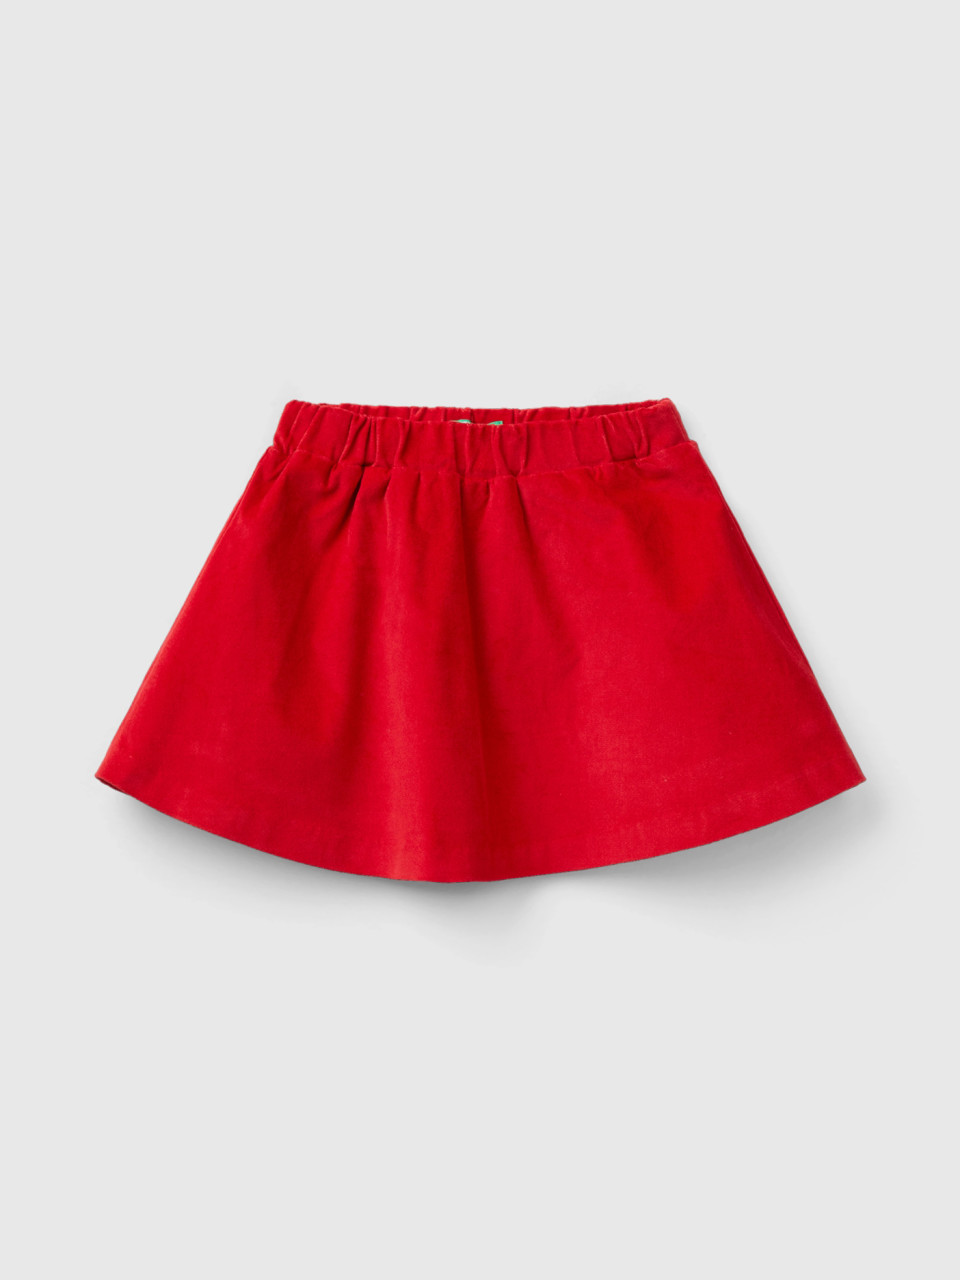 Benetton, Smooth Velvet Mini Skirt, Red, Kids